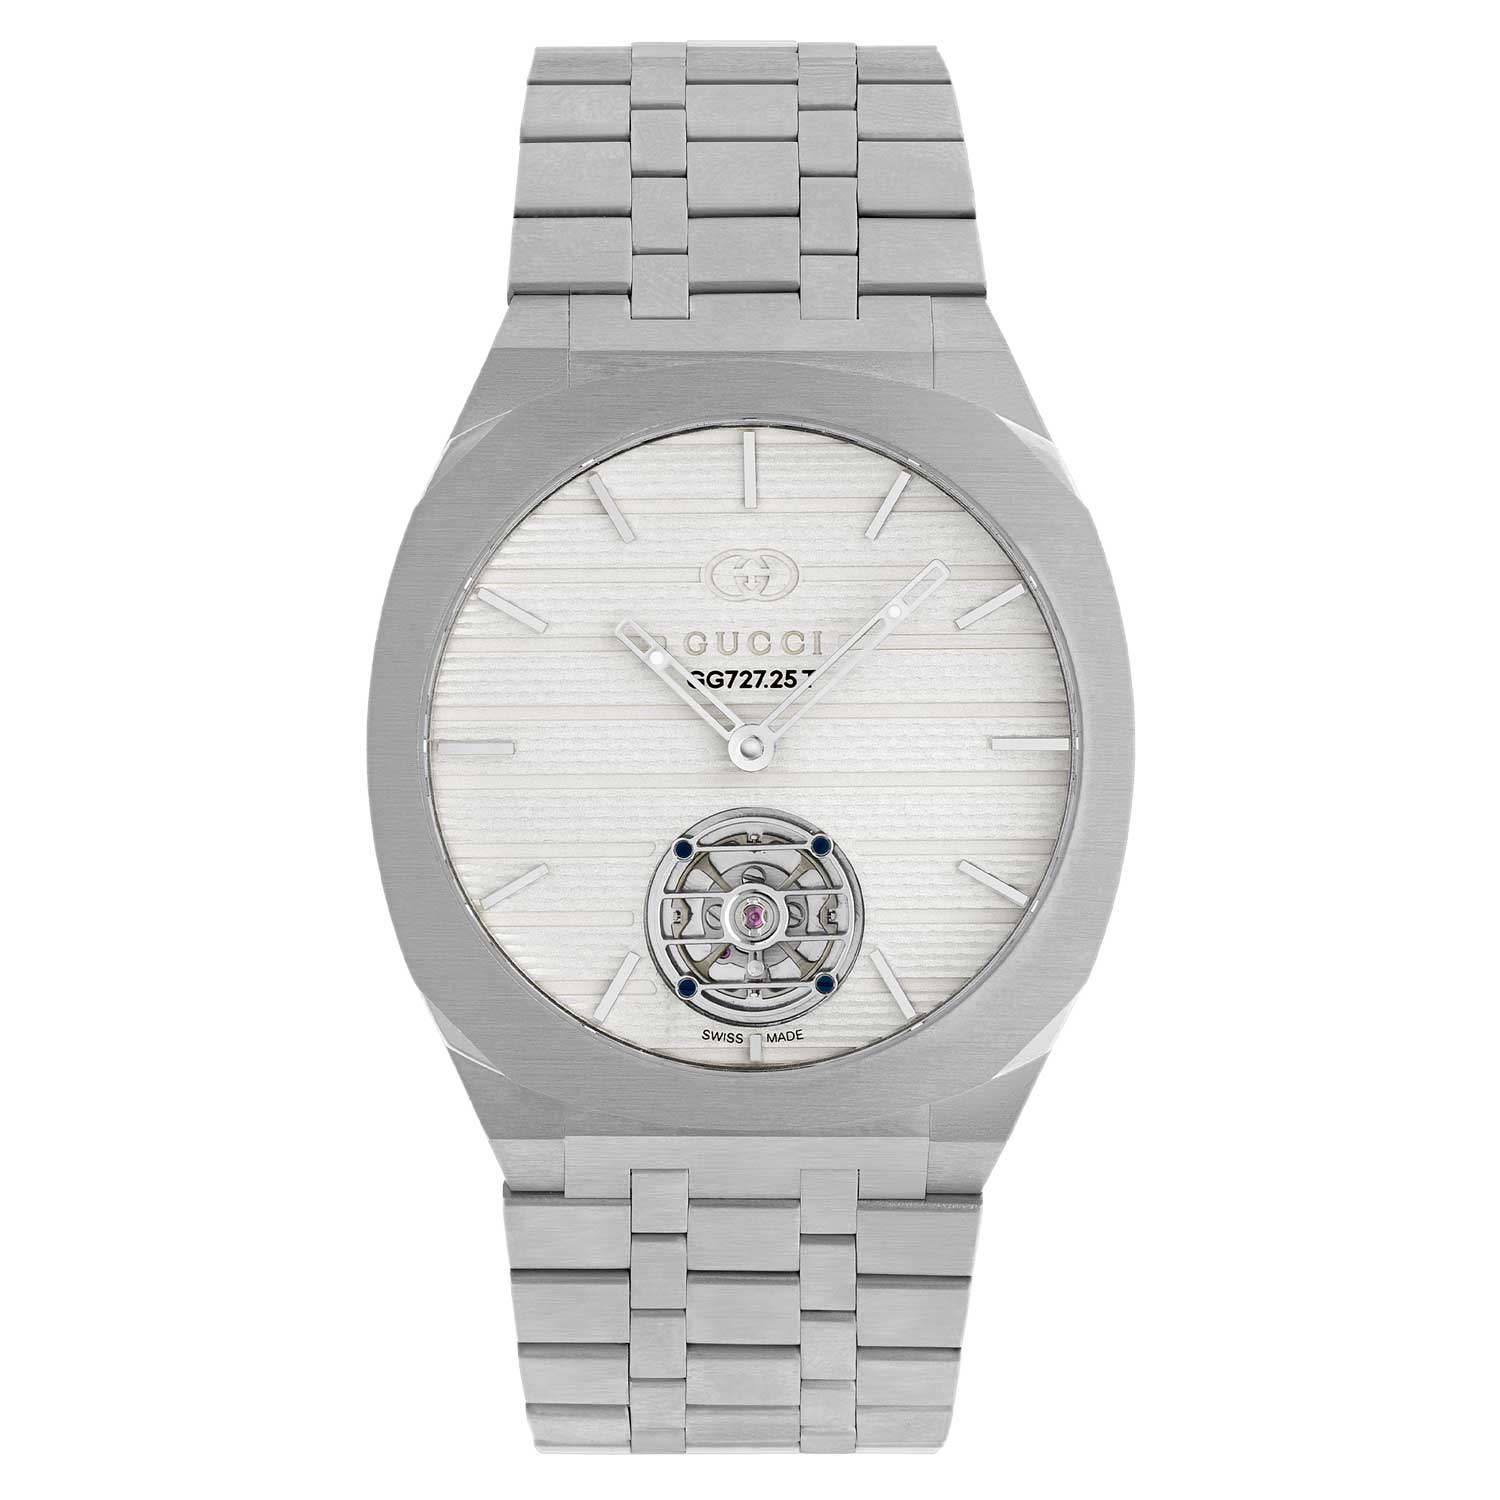 Đồng hồ Gucci 25H vỏ siêu mỏng - Gucci GG727.25